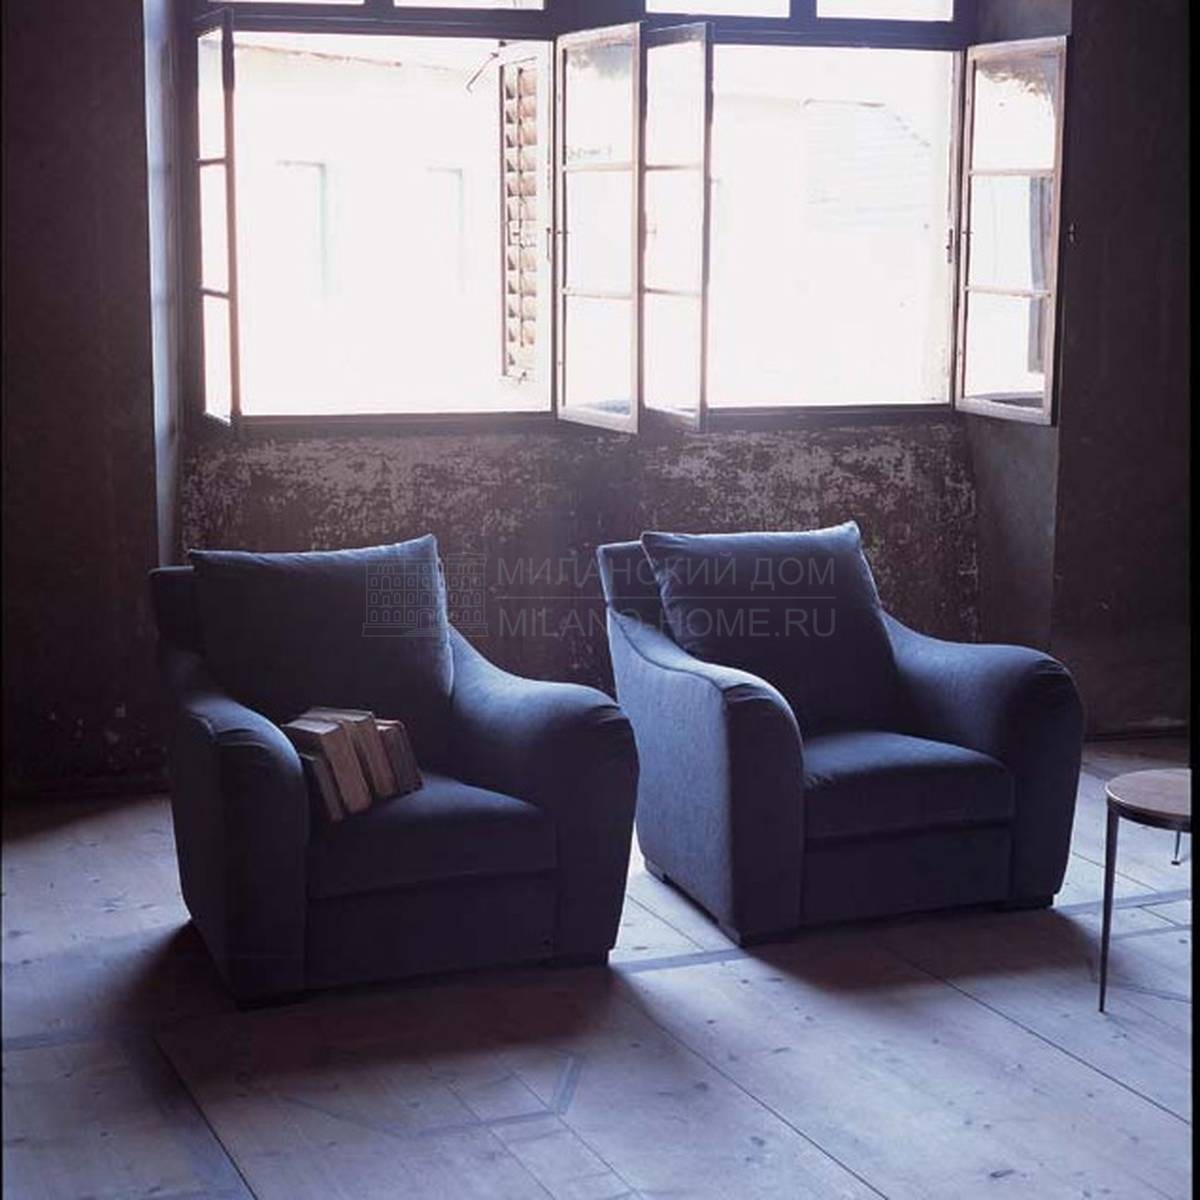 Кресло Unwind/ armchair из Италии фабрики FLEXFORM